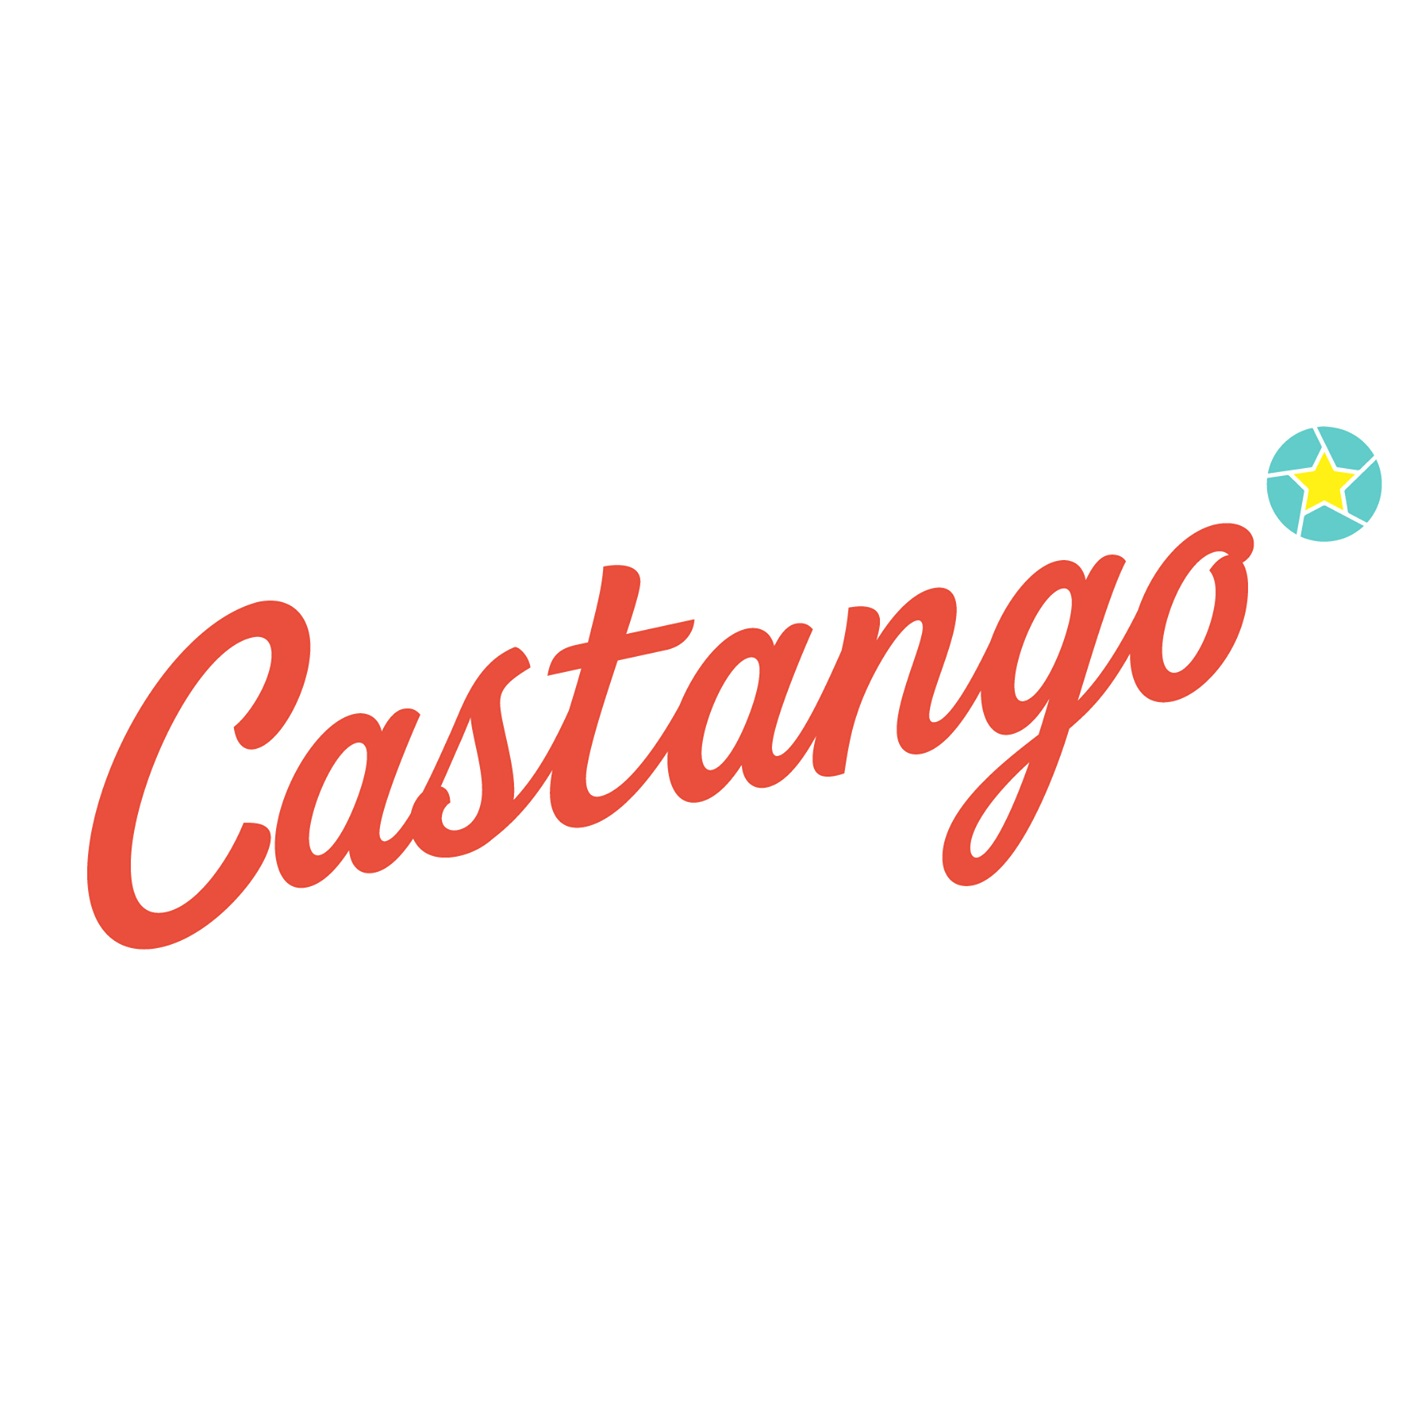 Castango Logo